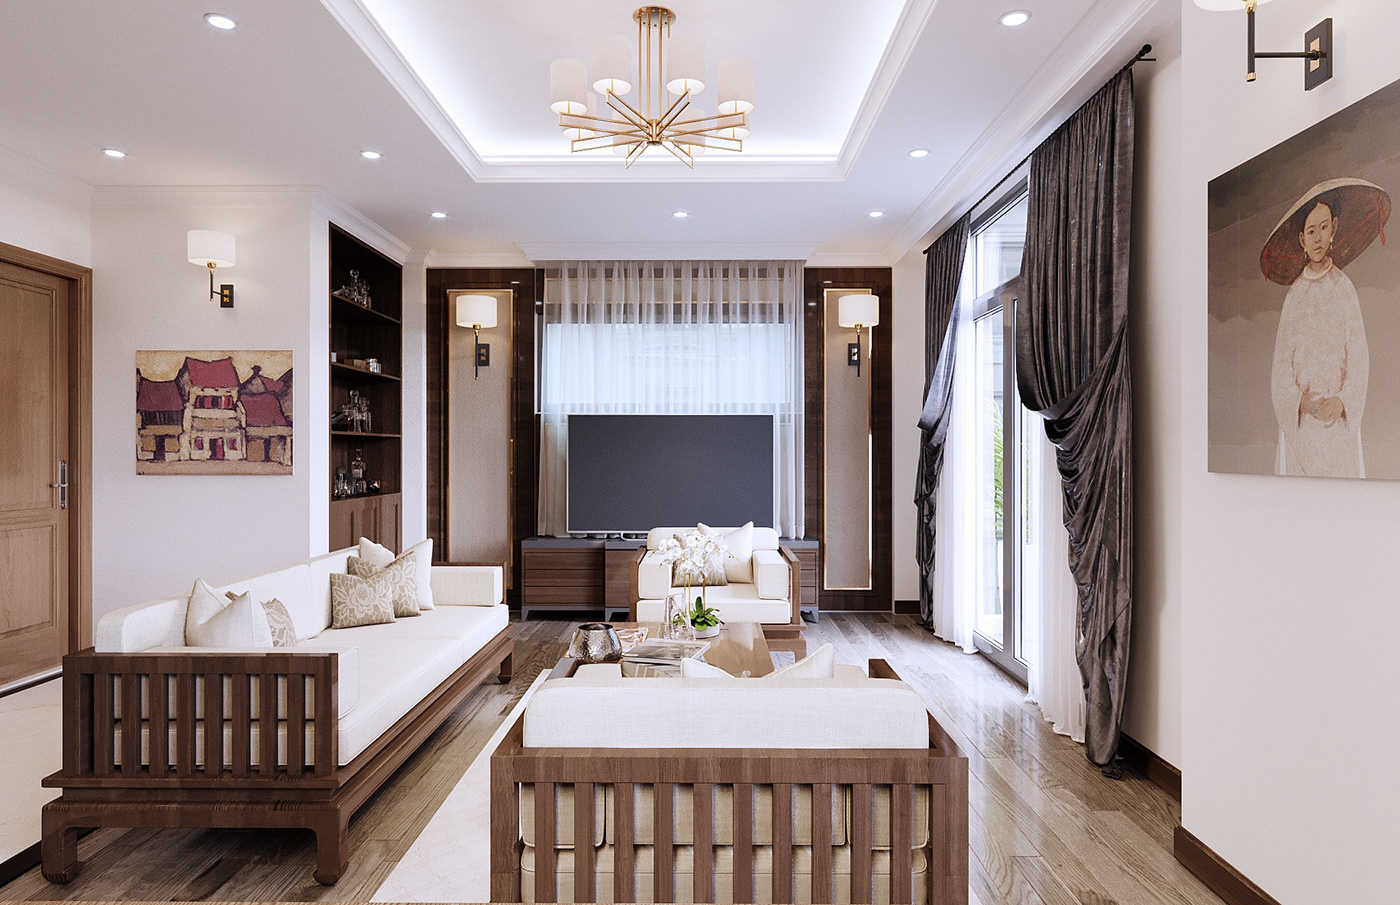 thiết kế nội thất Biệt Thự tại Hà Nội Thiết kế nội thất phong cách truyền thống 1 1536736951